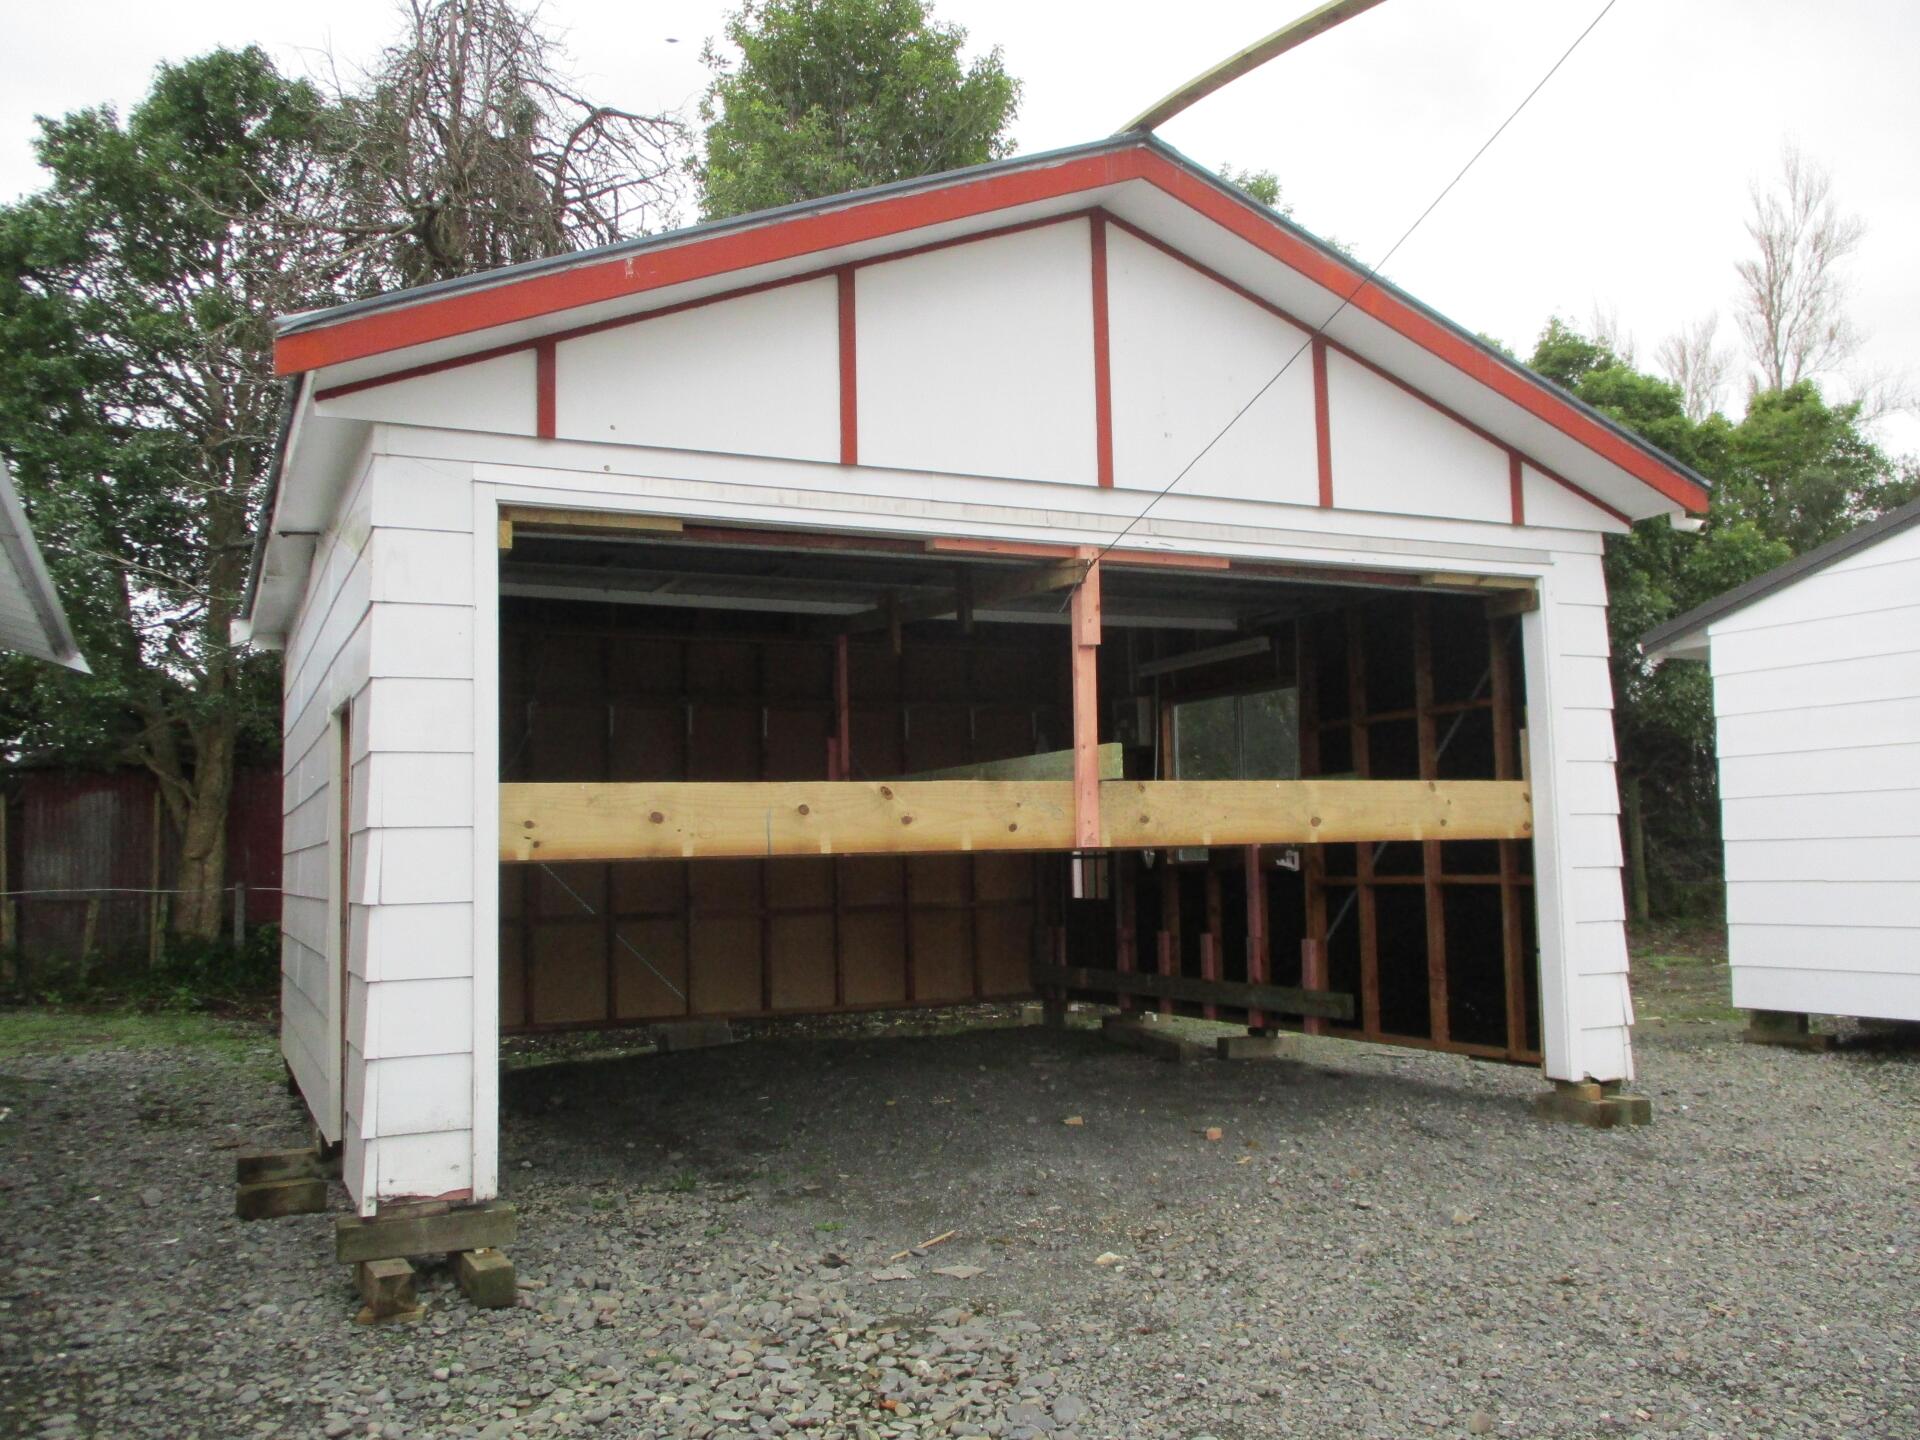 BL0062 - Garage/shed